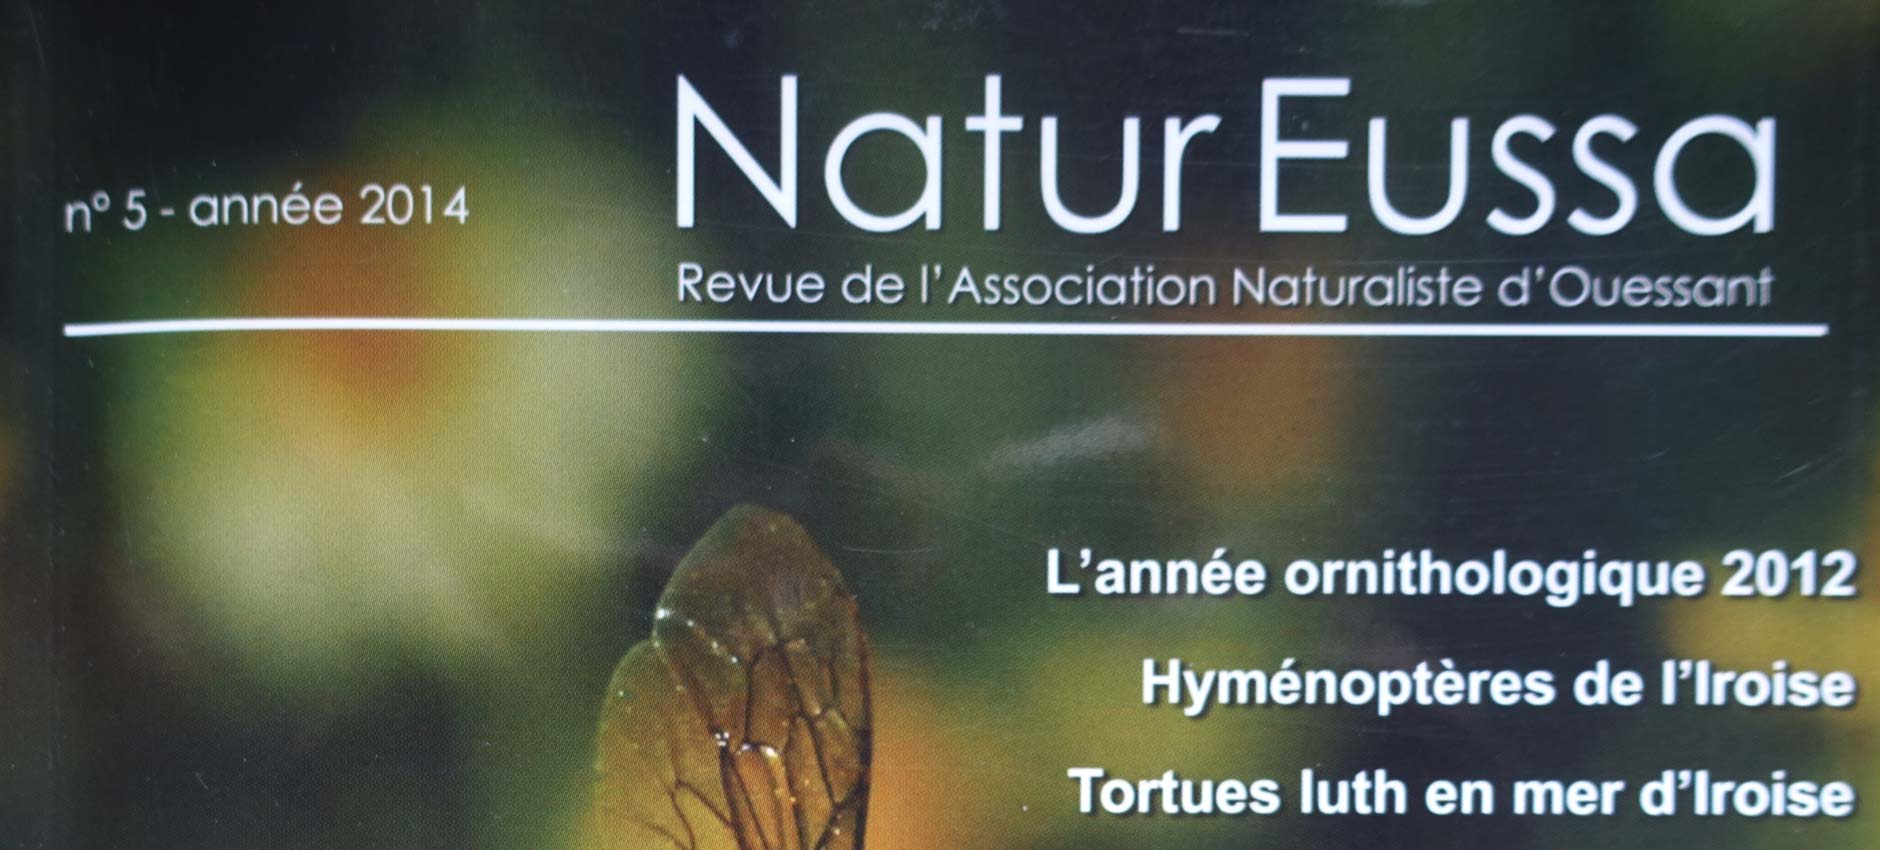 Publication Magazine “Natur Eussa” # 5